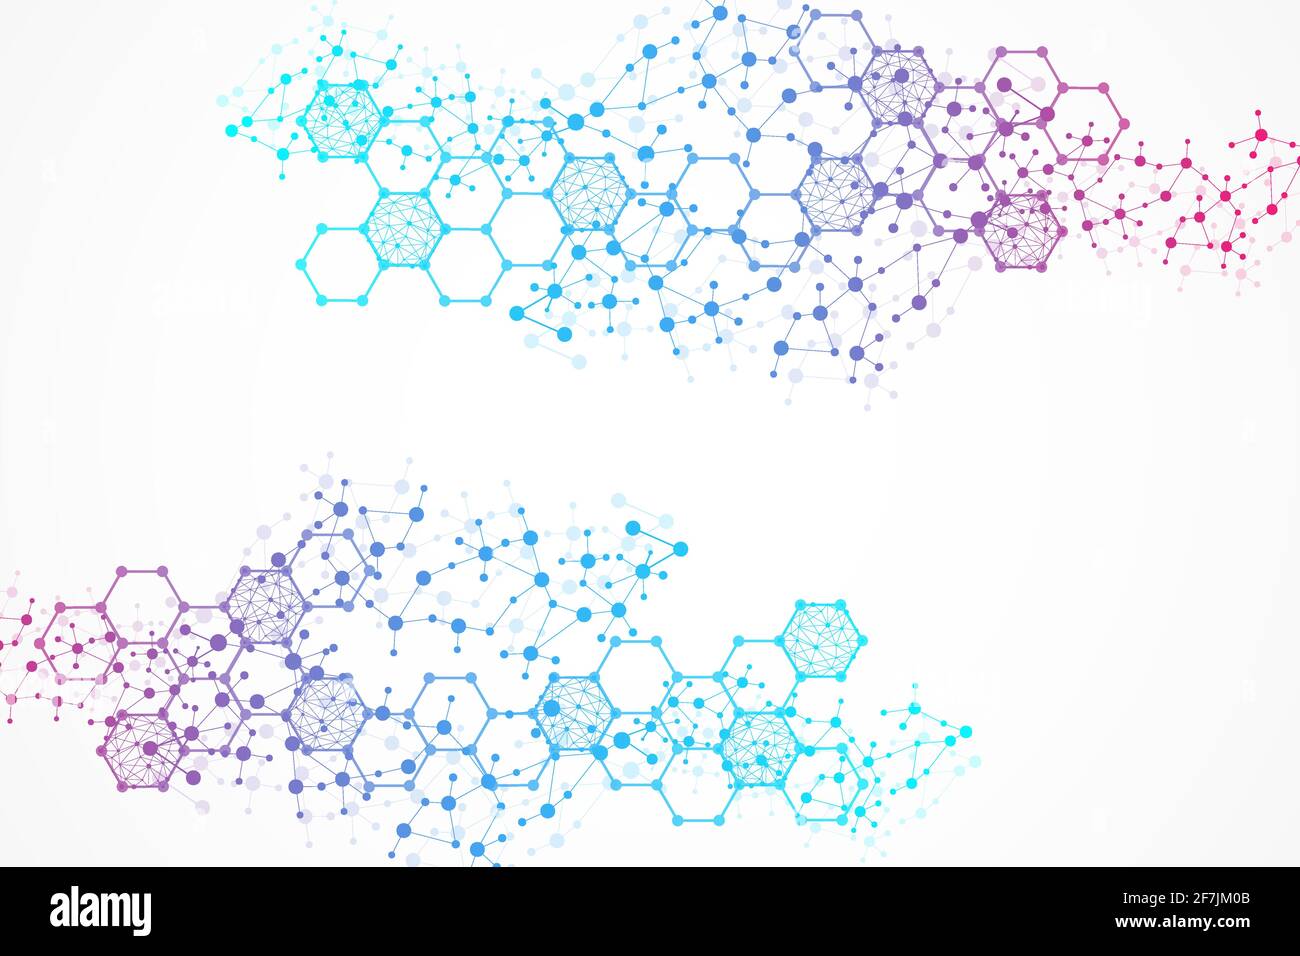 Wissenschaft Netzwerk Muster, Verbindungslinien und Punkten. Technologie Sechsecke Struktur oder molekulare verbinden Elemente Stock Vektor